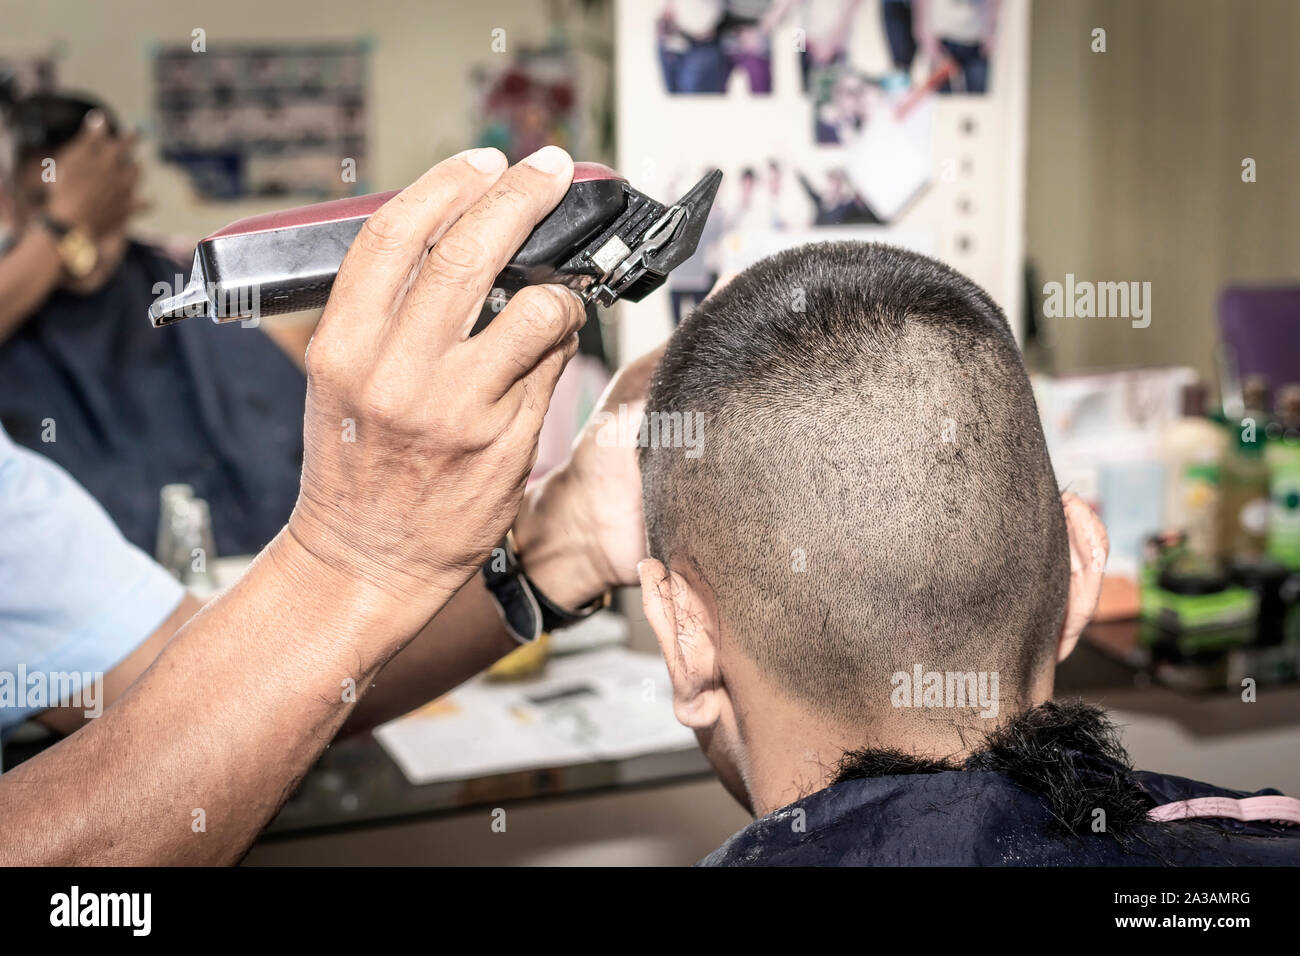 Die Crew Schneiden Frisur. Kurz und einfach Haare für Männer. Friseur, Frisur des Menschen im barbershop. Stockfoto